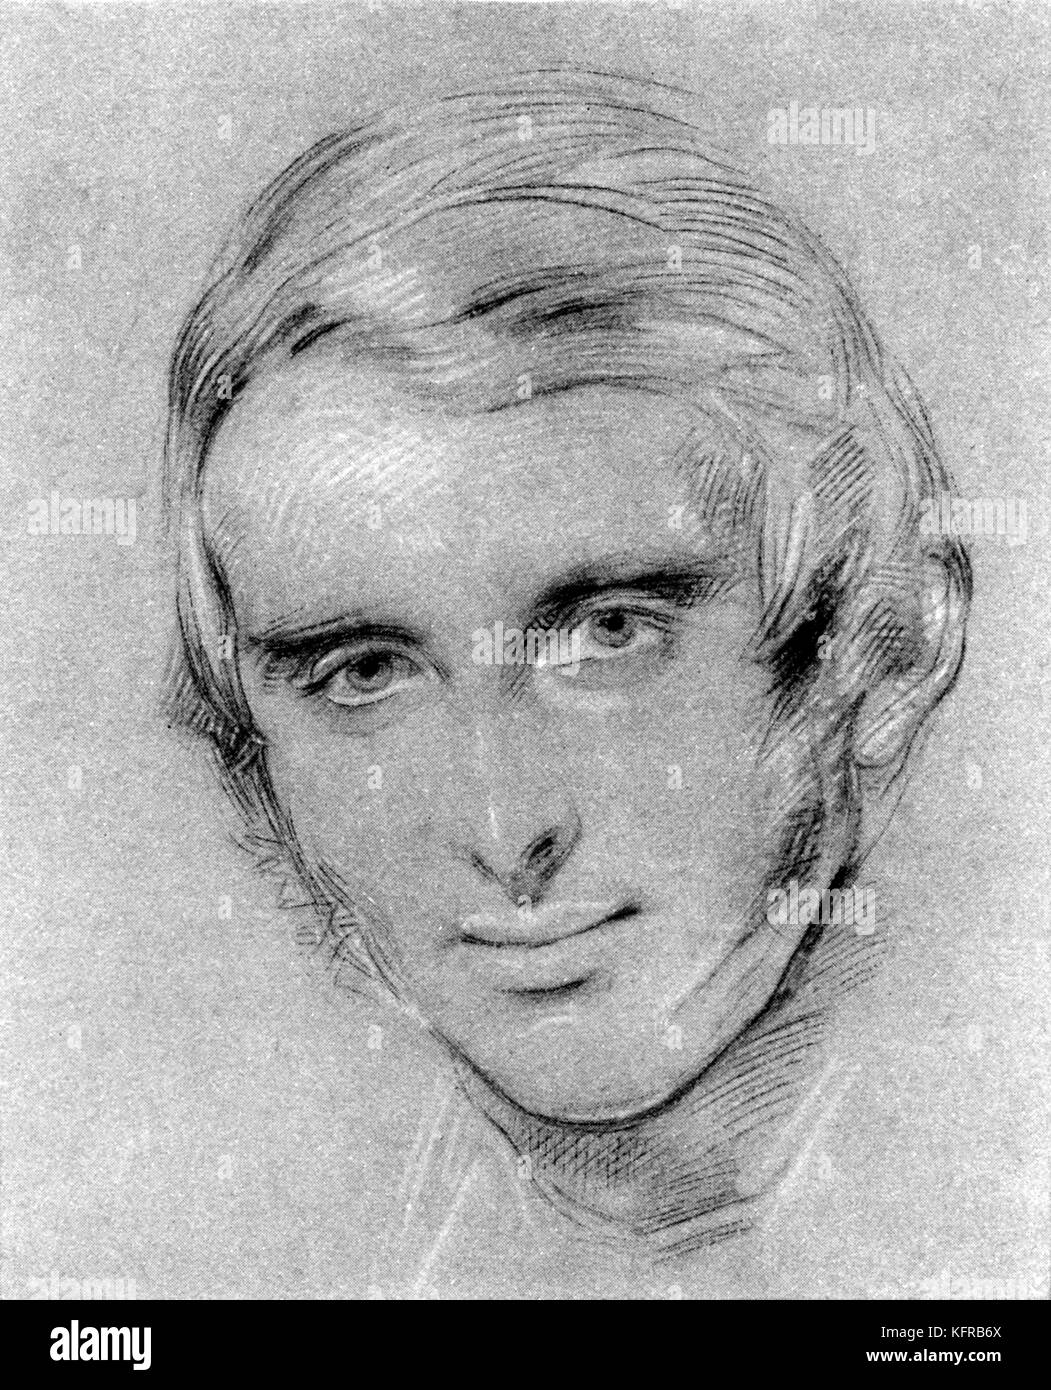 John Ruskin - ritratto, dopo chalk disegno da George Richmond. Artista inglese, critico d'arte e pensatore sociale, 8 febbraio 1819 - 20 gennaio 1900. Foto Stock